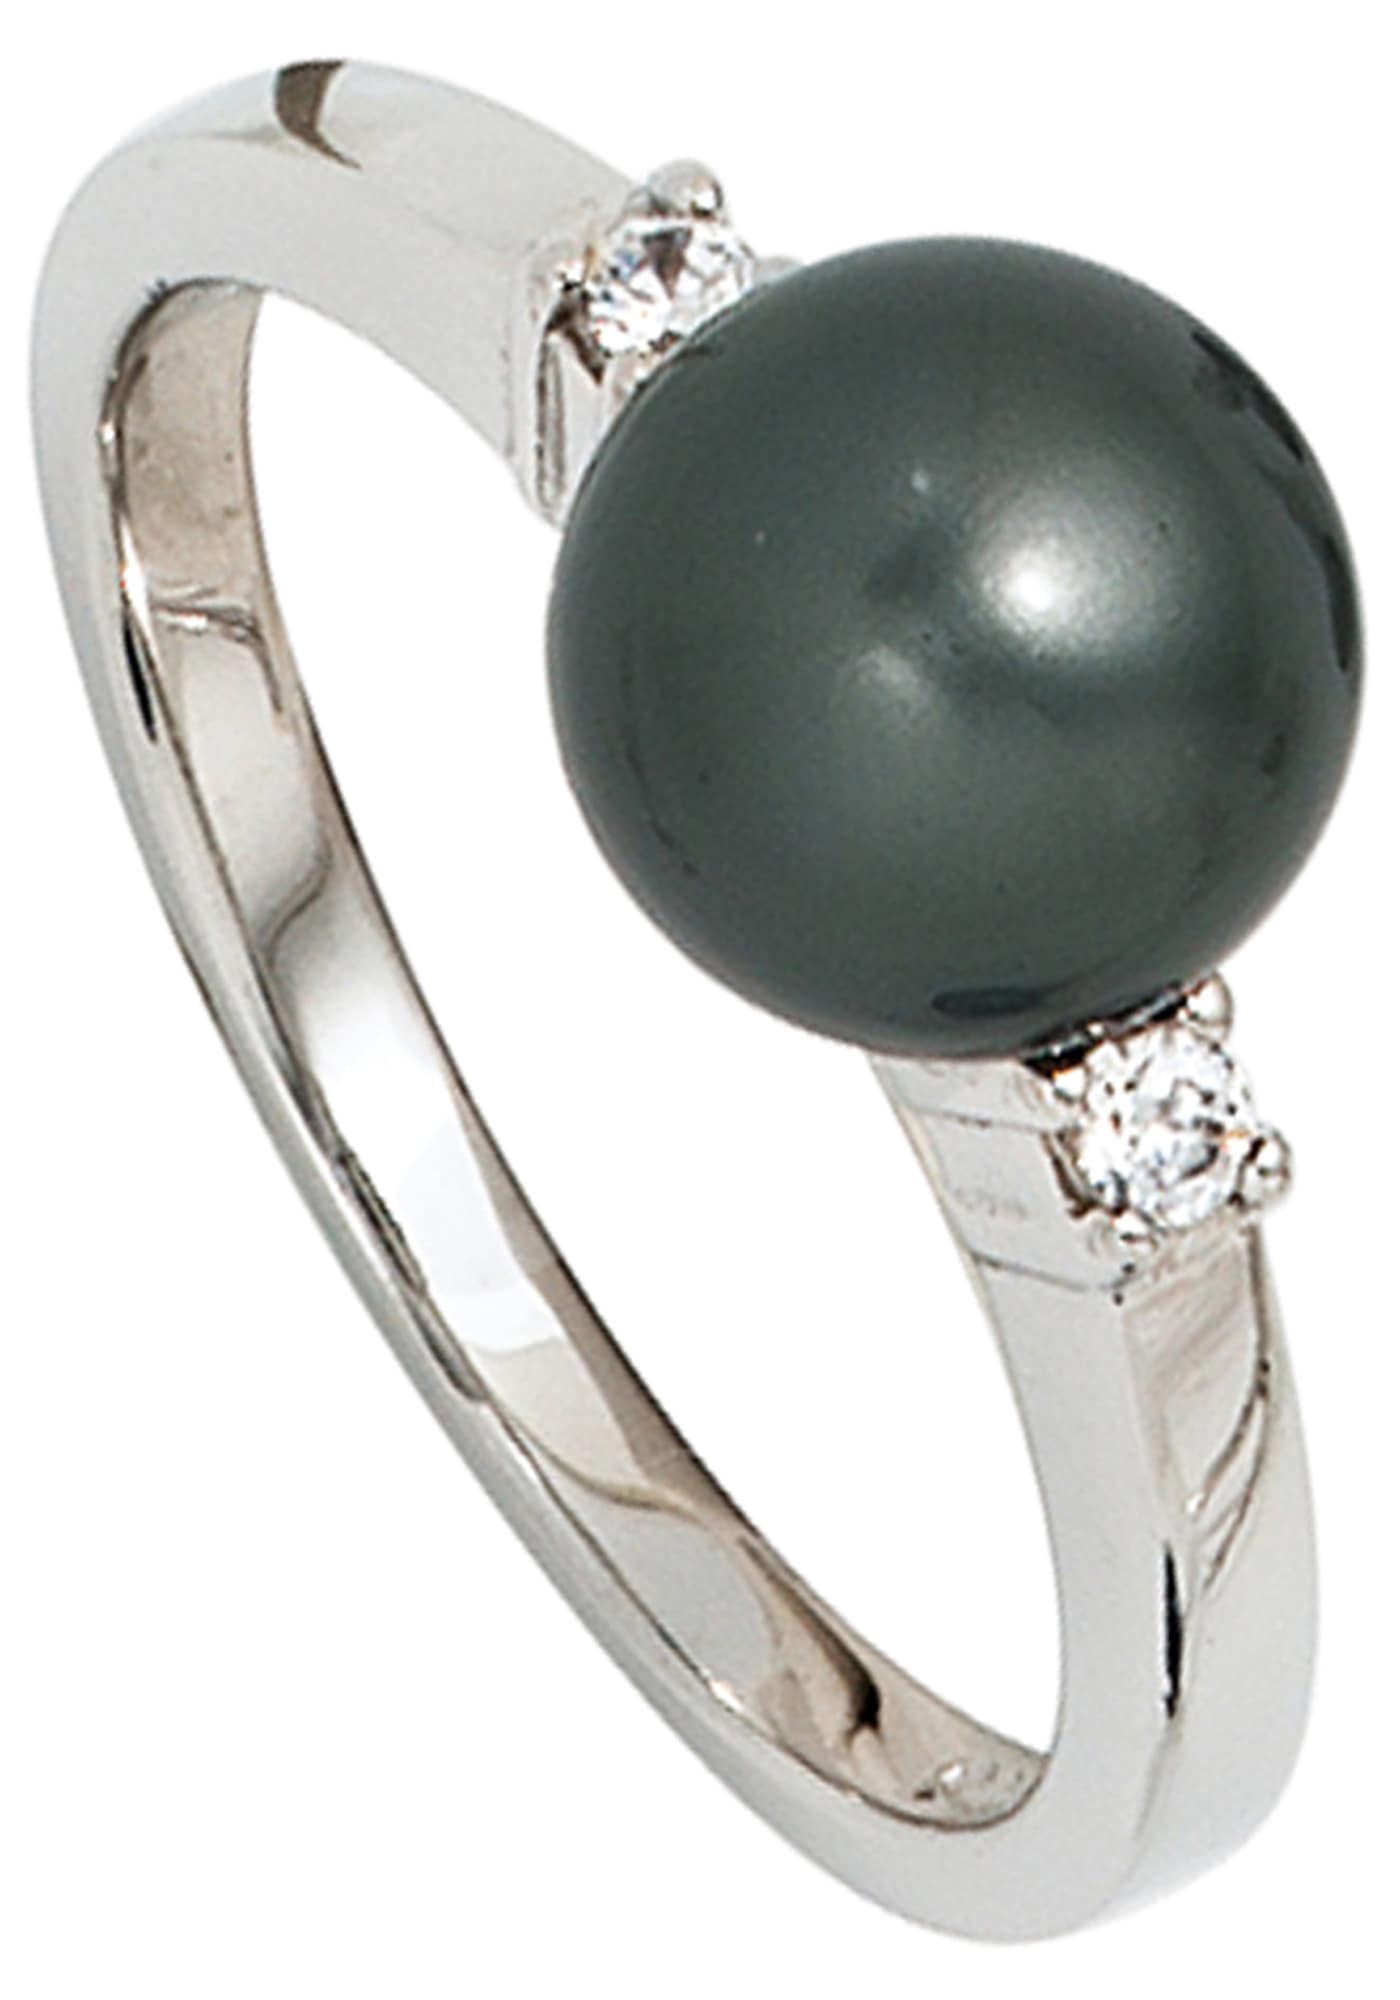 Perlenring, 925 Silber mit synthetischer Perle und Zirkonia